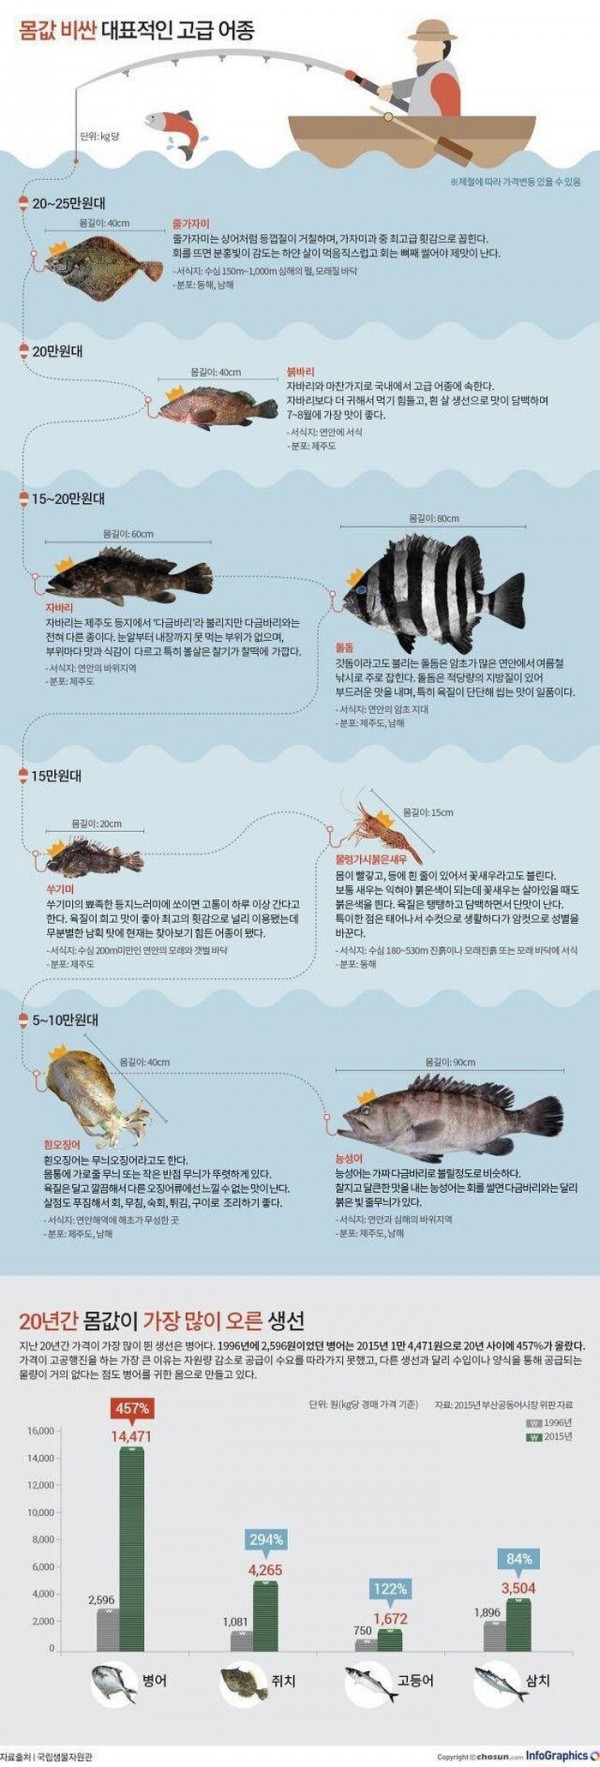 몸값 비싼 대표적인 고급 생선.jpg